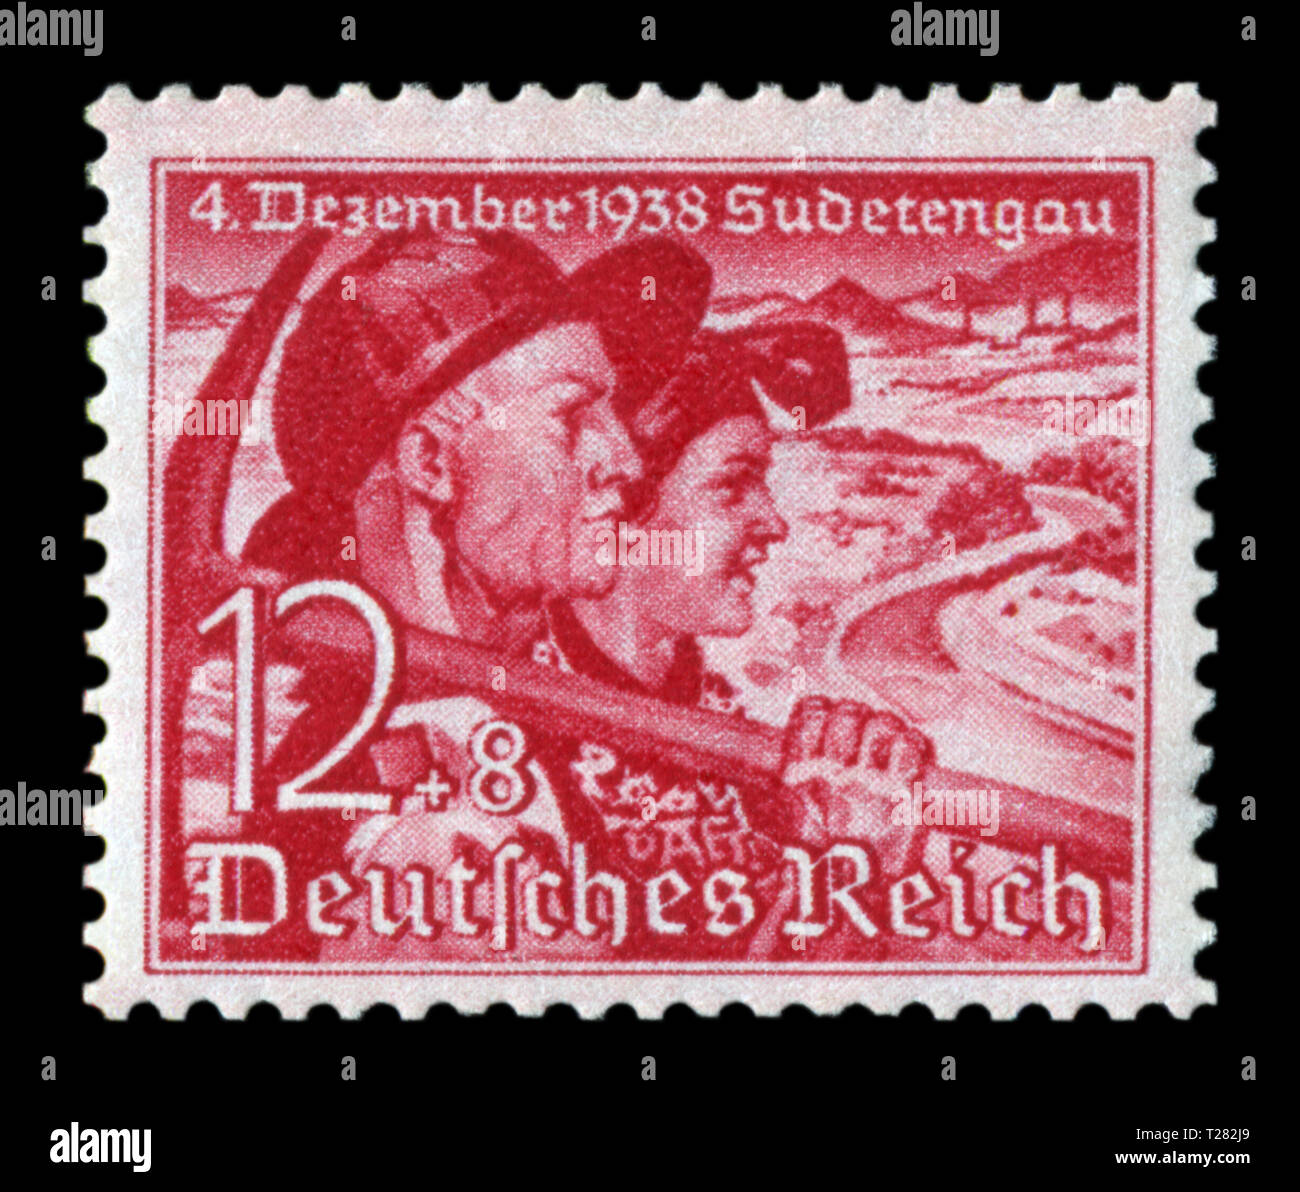 Historique allemand stamp : Référendum sur l'adhésion de la région des Sudètes. Couple. Avec un mineur et une femme paysan, 12 +8 pf, numéro 1938, Allemagne Banque D'Images